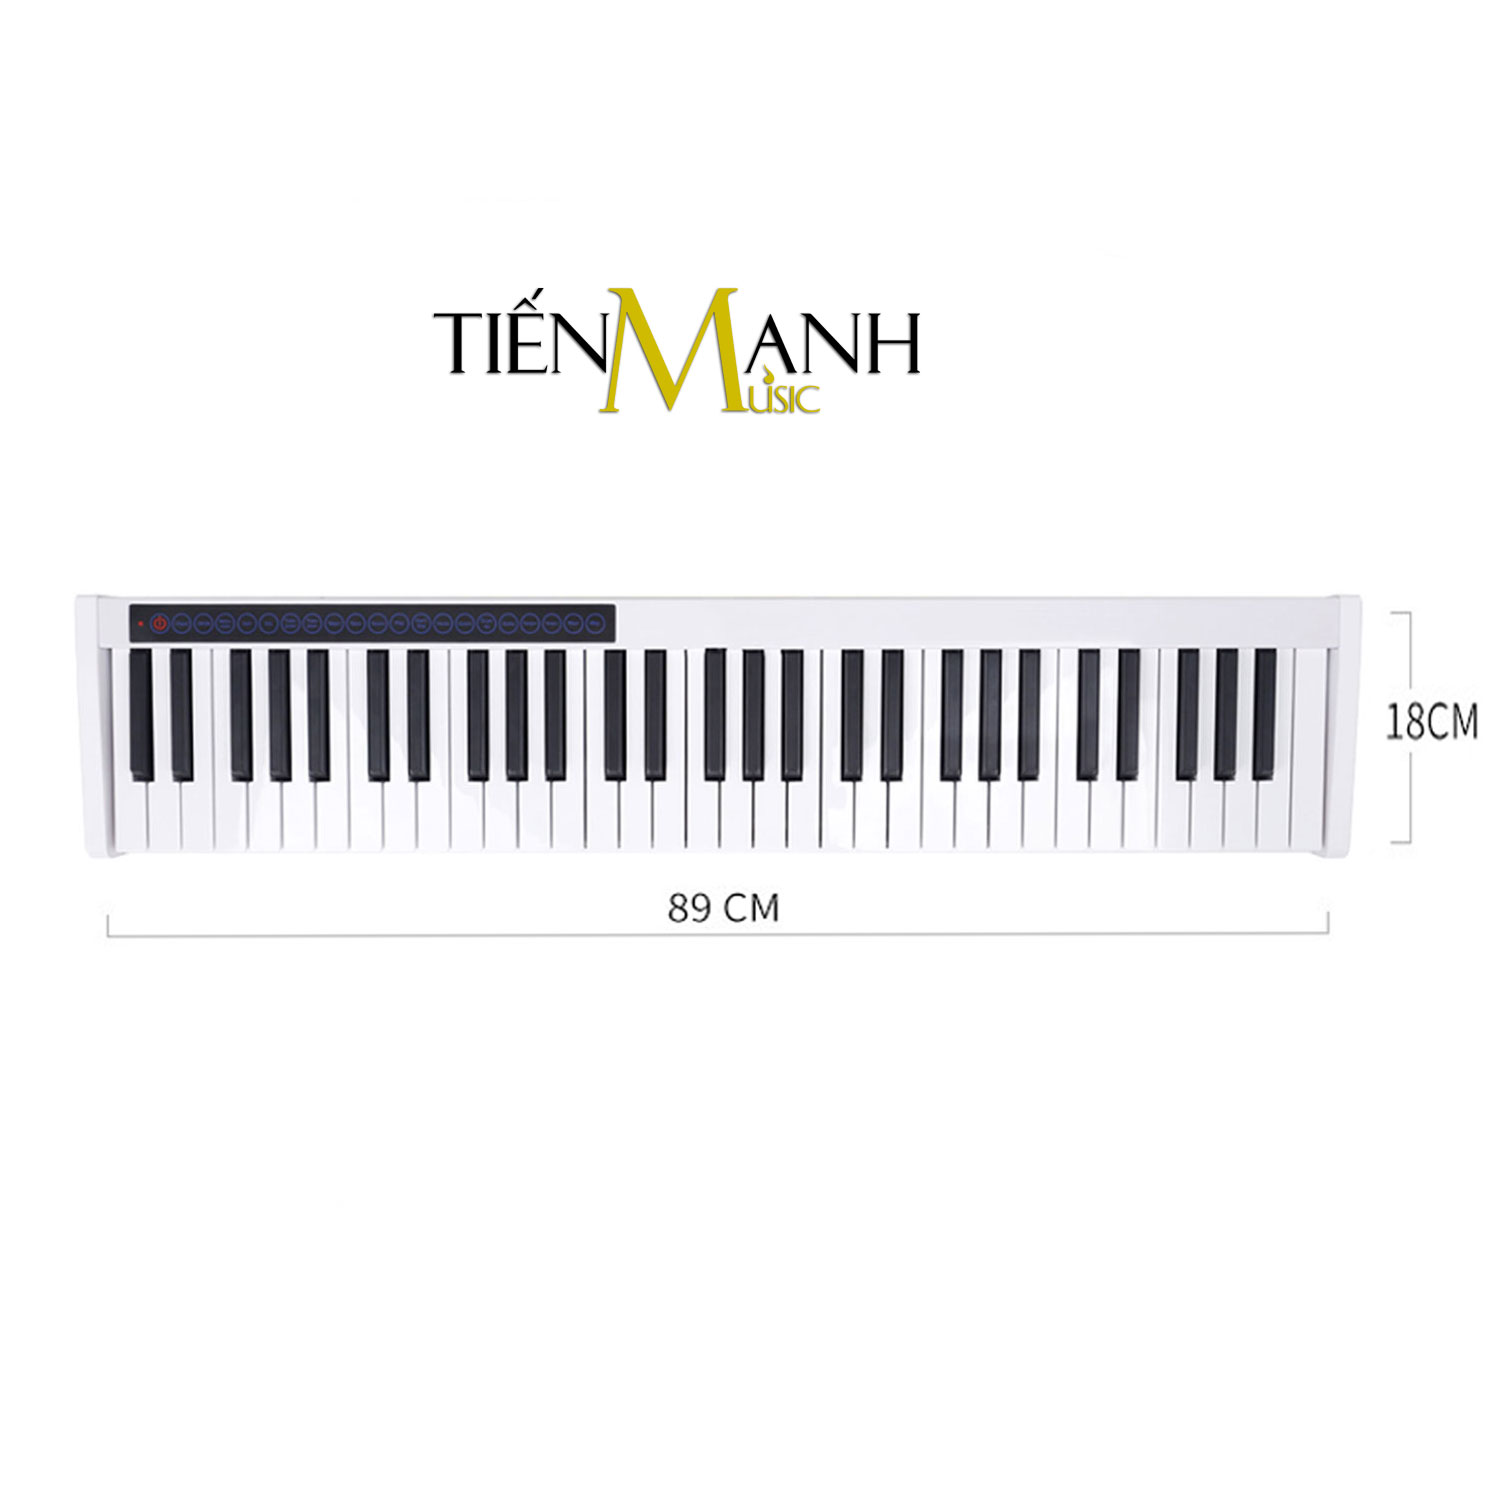 [Bluetooth] Đàn Piano Điện Bora BX1-61 (Màu Trắng) - 61 Phím nặng Cảm ứng lực Midi Keyboard Controllers BX1 Hàng Chính Hãng - Kèm Móng Gẩy DreamMaker